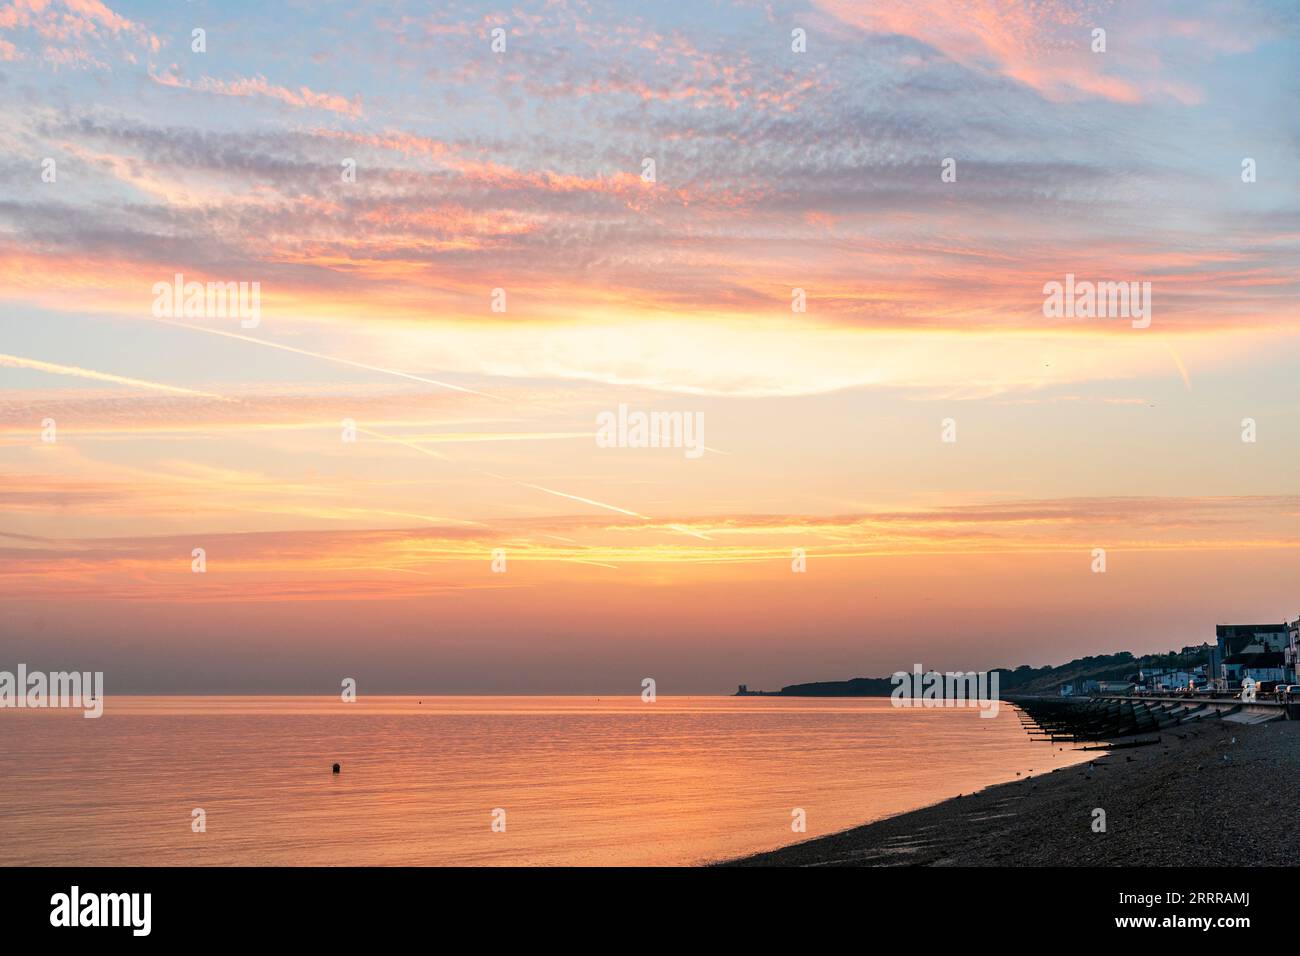 Le ciel de l'aube sur la plage du front de mer et la mer à Herne Bay sur la côte nord du Kent. Quelques couches de nuage jaune et orange contre un ciel bleu. Mer orange reflétant la lumière. Banque D'Images